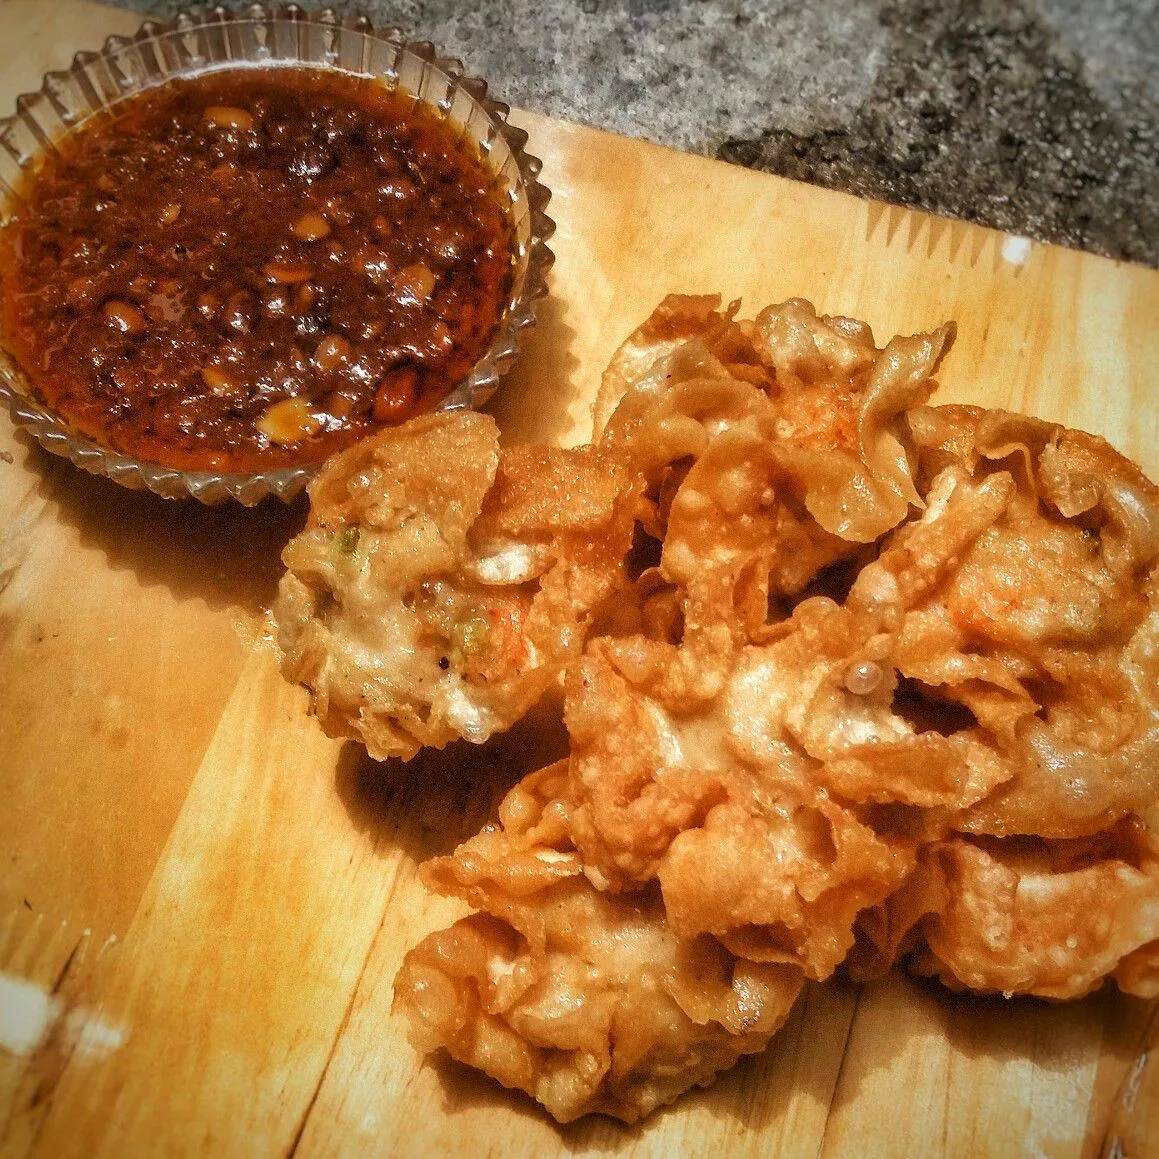 Fried Dumpling and Peanut Sauce #JagoMasakMinggu5